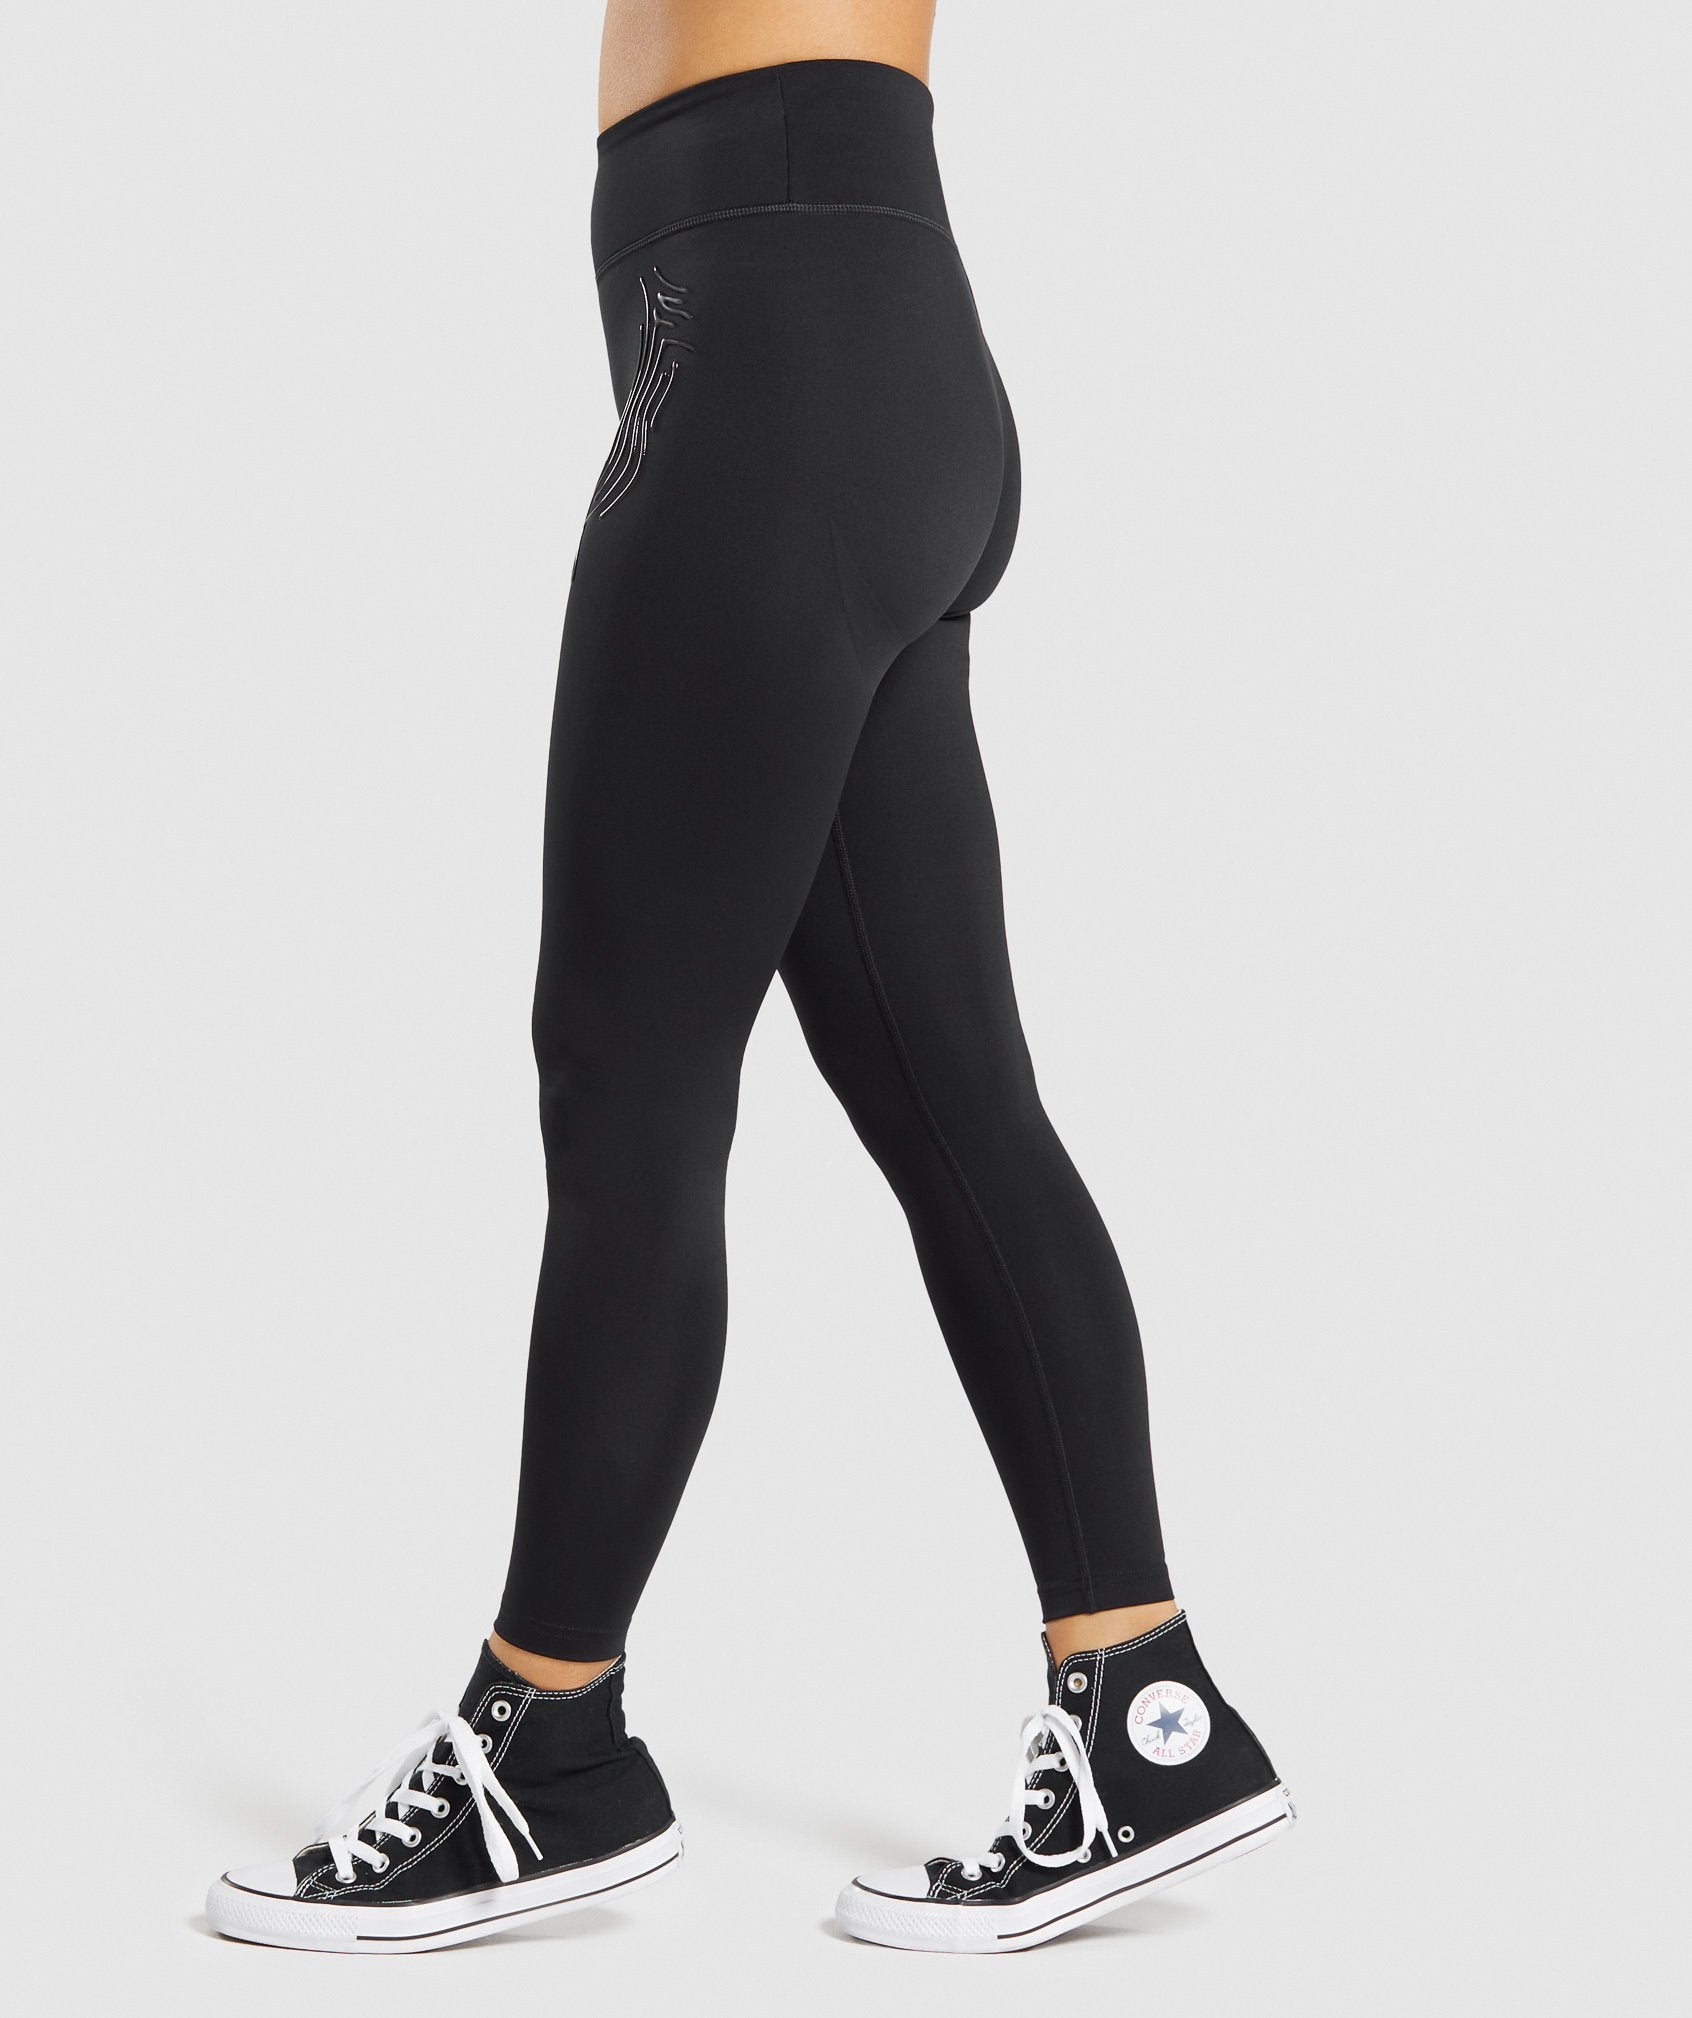 Gymshark Exo Ultra Leggings - Black  Black leggings, Leggings, High  waisted leggings